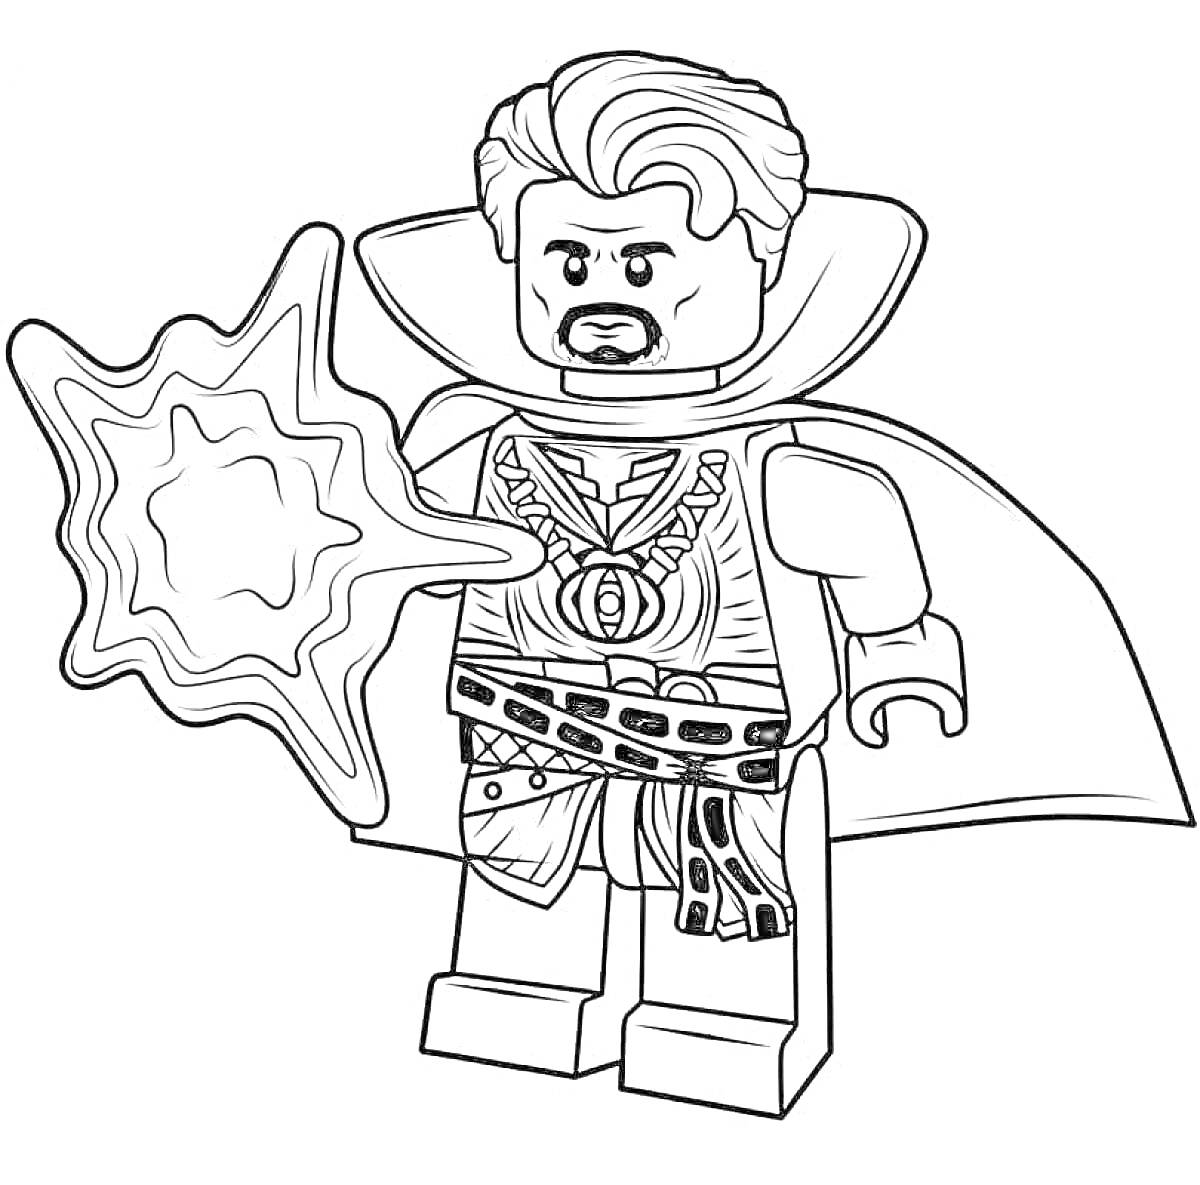 Раскраска Лего фигурка супергероя с плащом и магическим заклинанием в руке